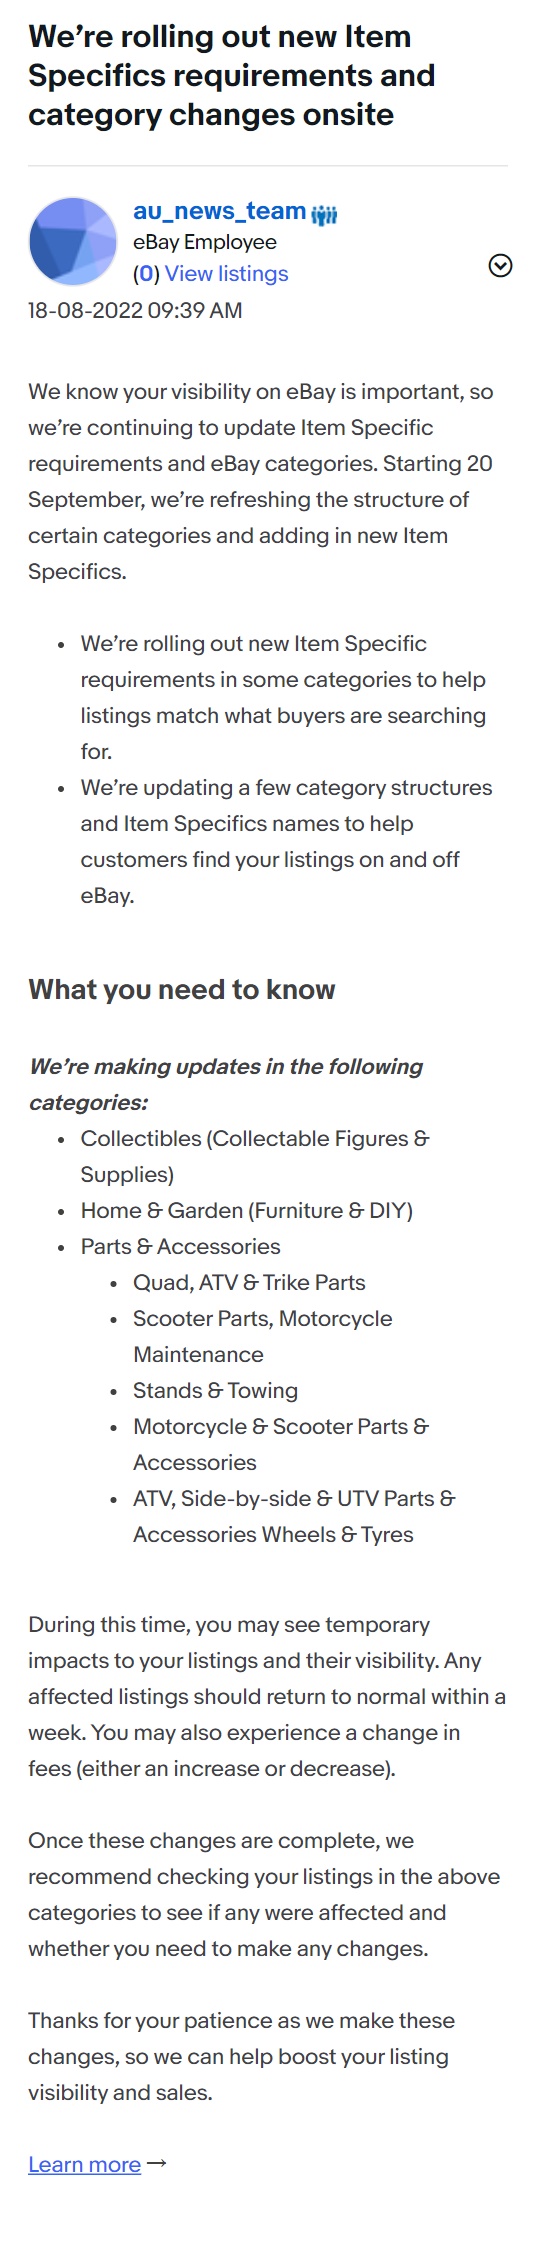 eBay澳大利亚站将更新类目结构 增加新物品细节